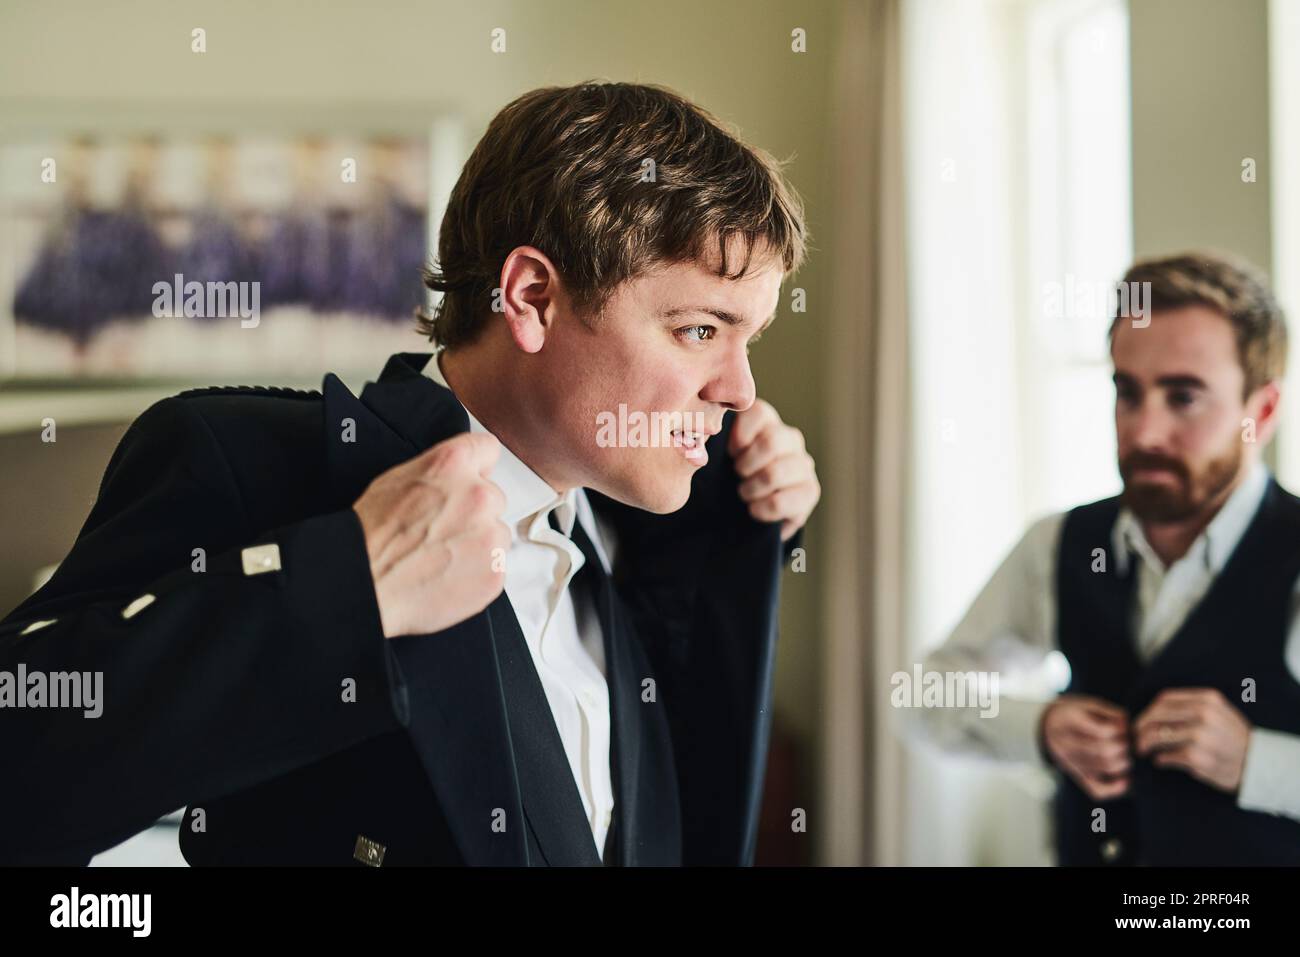 Vorbereitung auf seinen großen Tag. Ein selbstbewusster junger Mann, der eine Jacke anlegt, während er in einen Spiegel schaut, um sich für eine Hochzeit vorzubereiten. Stockfoto